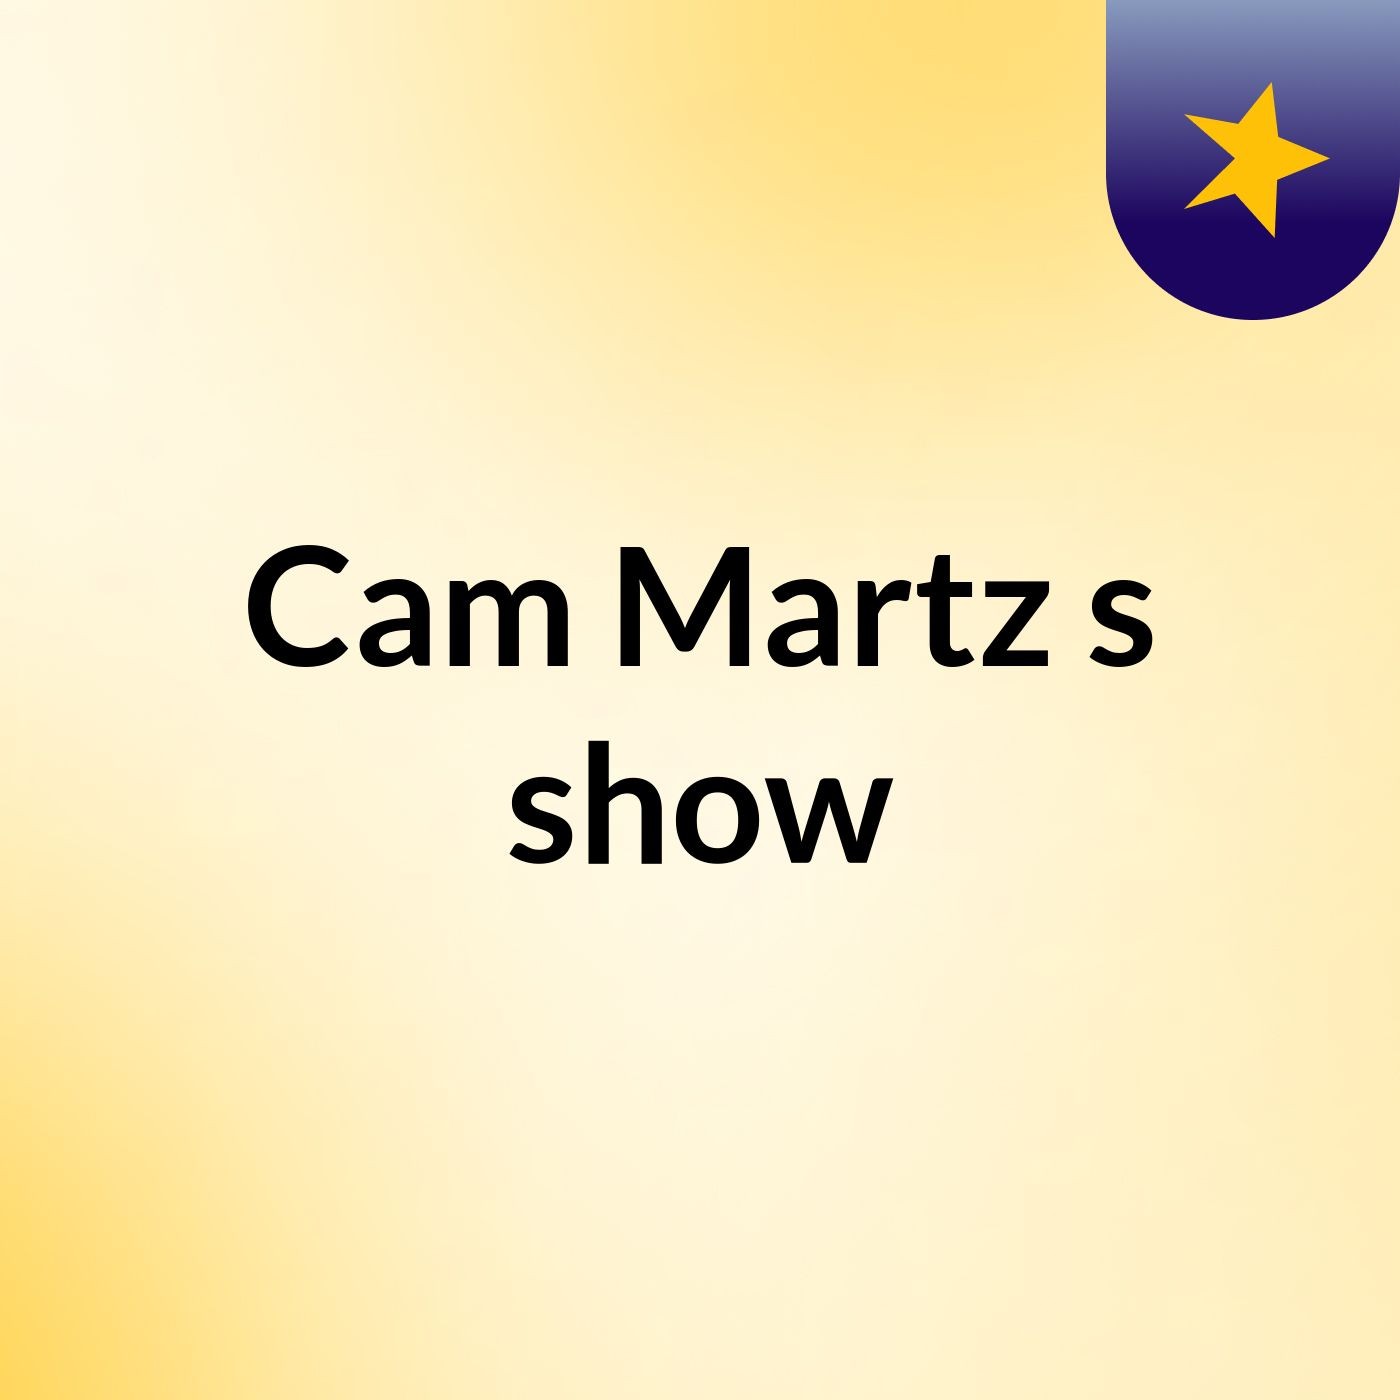 Cam Martz's show